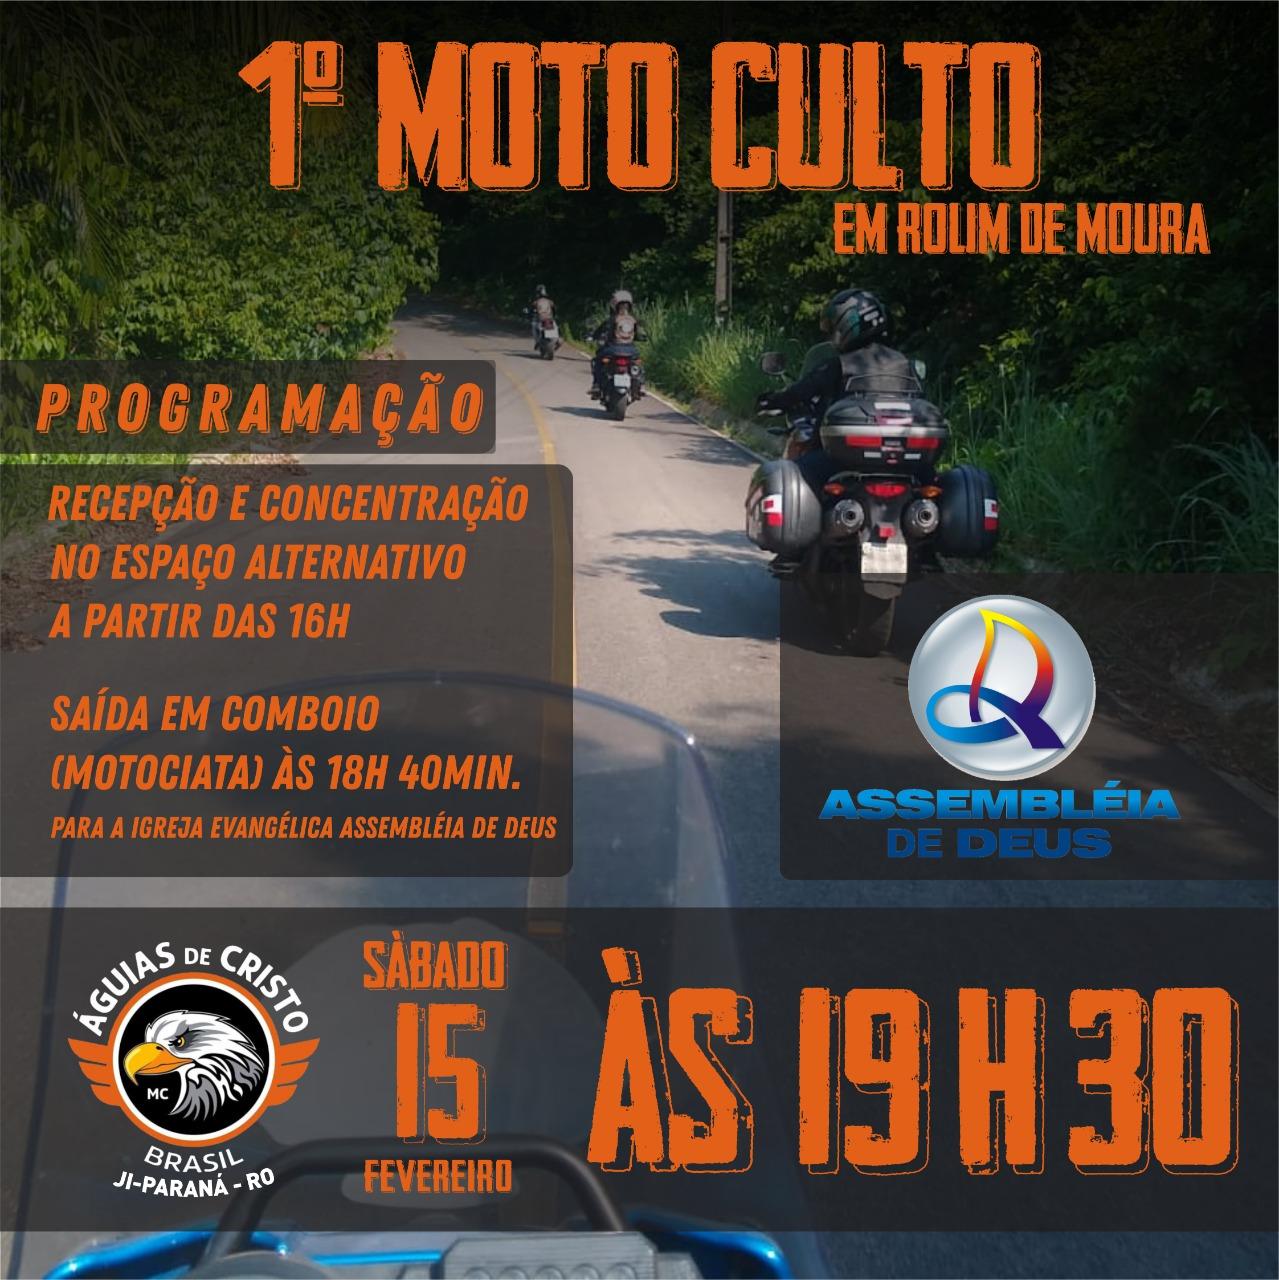 Dia 15 de fevereiro acontecerá 1ª Motoculto de Rolim de Moura